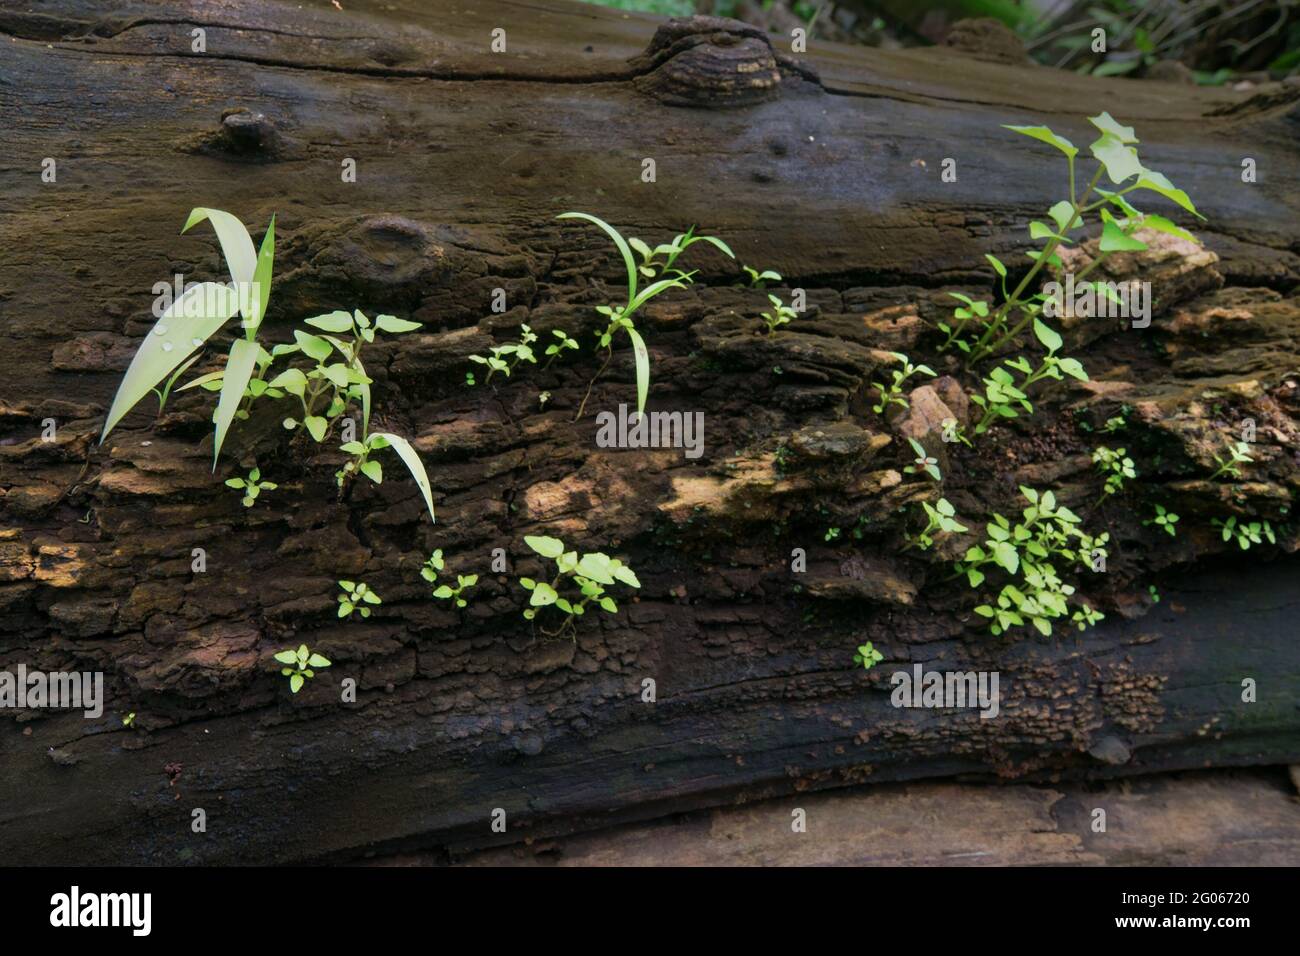 Neues Pflanzenwachstum auf altem Baumstamm, schönes Naturstockbild. Düsterer Hintergrund. Stockfoto